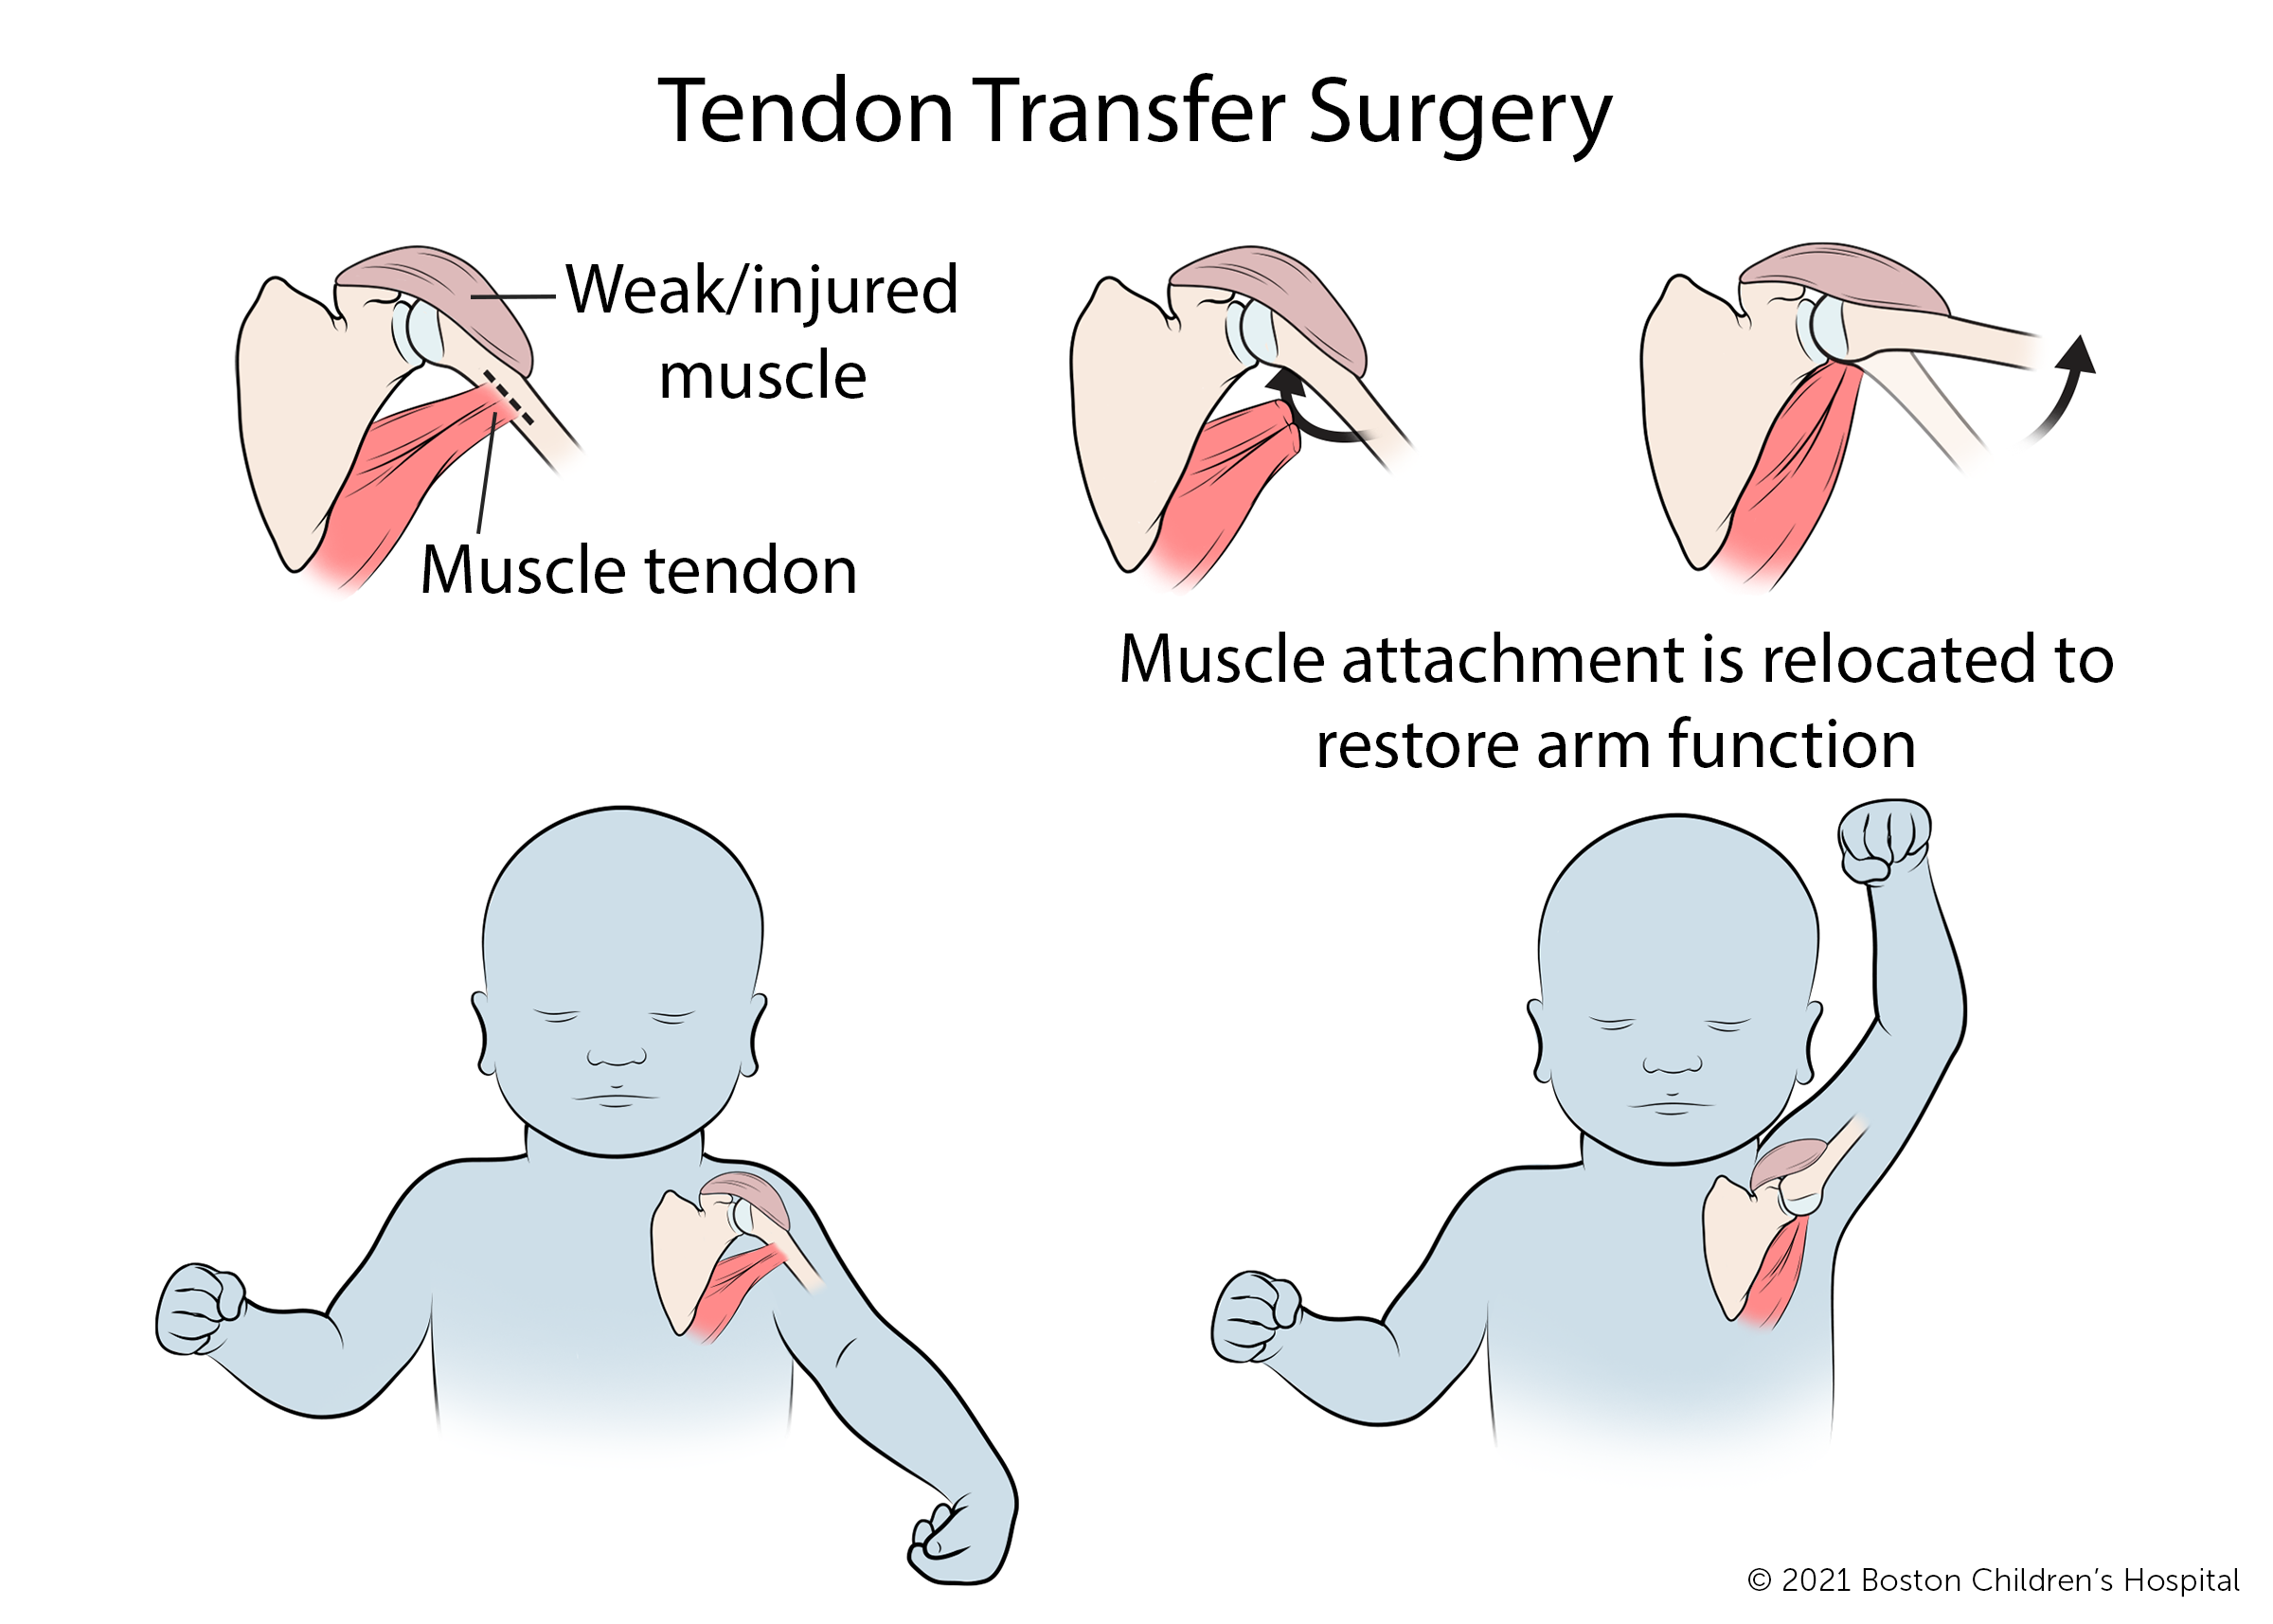 在肌腱转移手术中，将虚弱或受伤肌肉的肌腱从其正常附着点分离出来，并重新连接到一个新的位置，以恢复手臂功能。